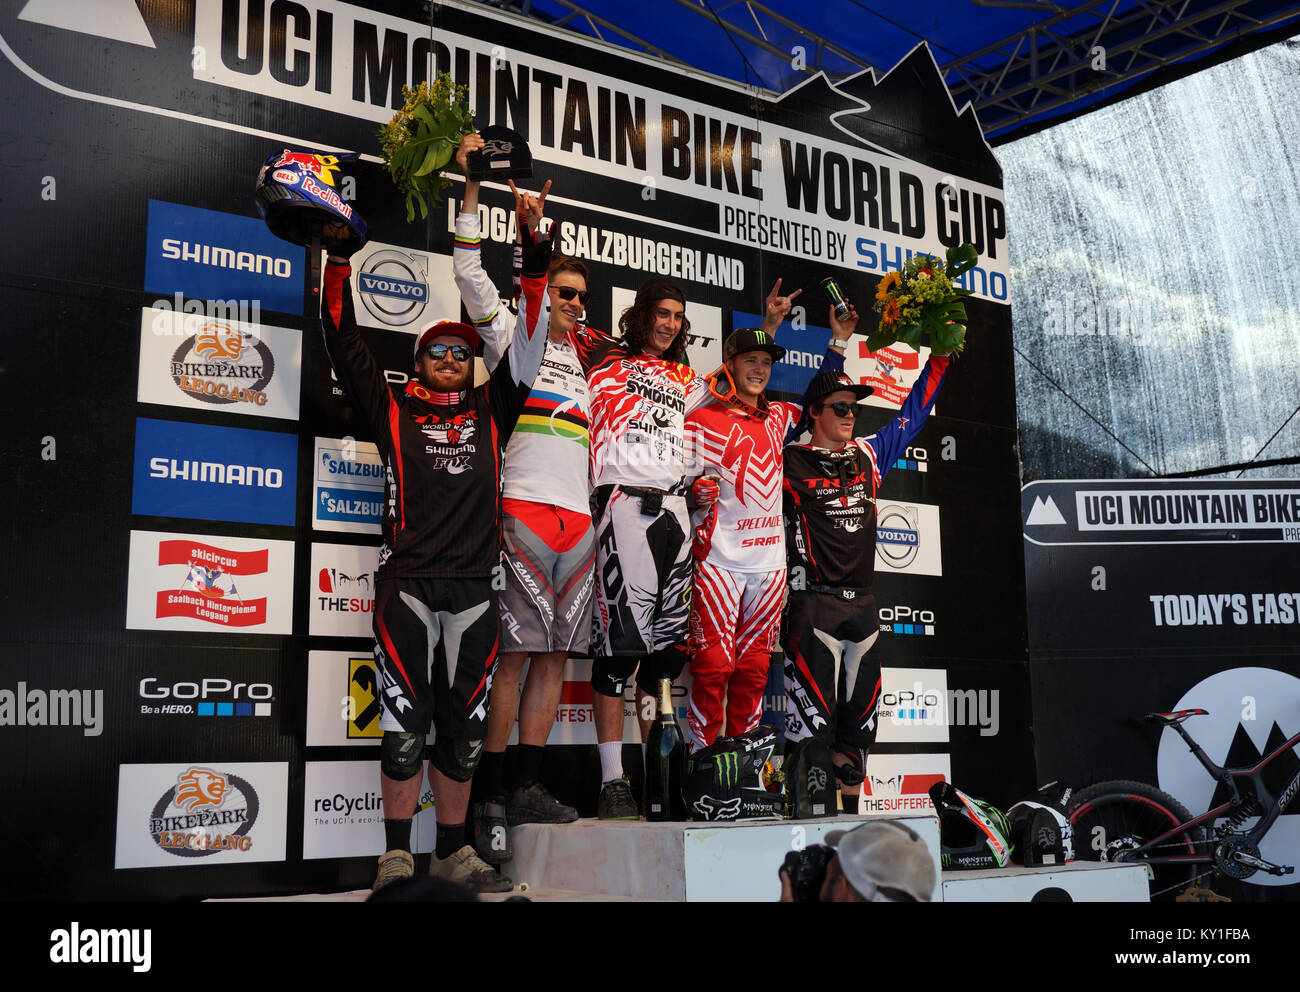 Die Gewinner der UCI MTB World Cup 4 Runde stehen zusammen auf dem Podium in Leogang. Der große Gewinner war Josh Bryceland (GBR) von Santa Cruz Syndicate. Gonzales Foto/Christoph Obeschneider. Stockfoto